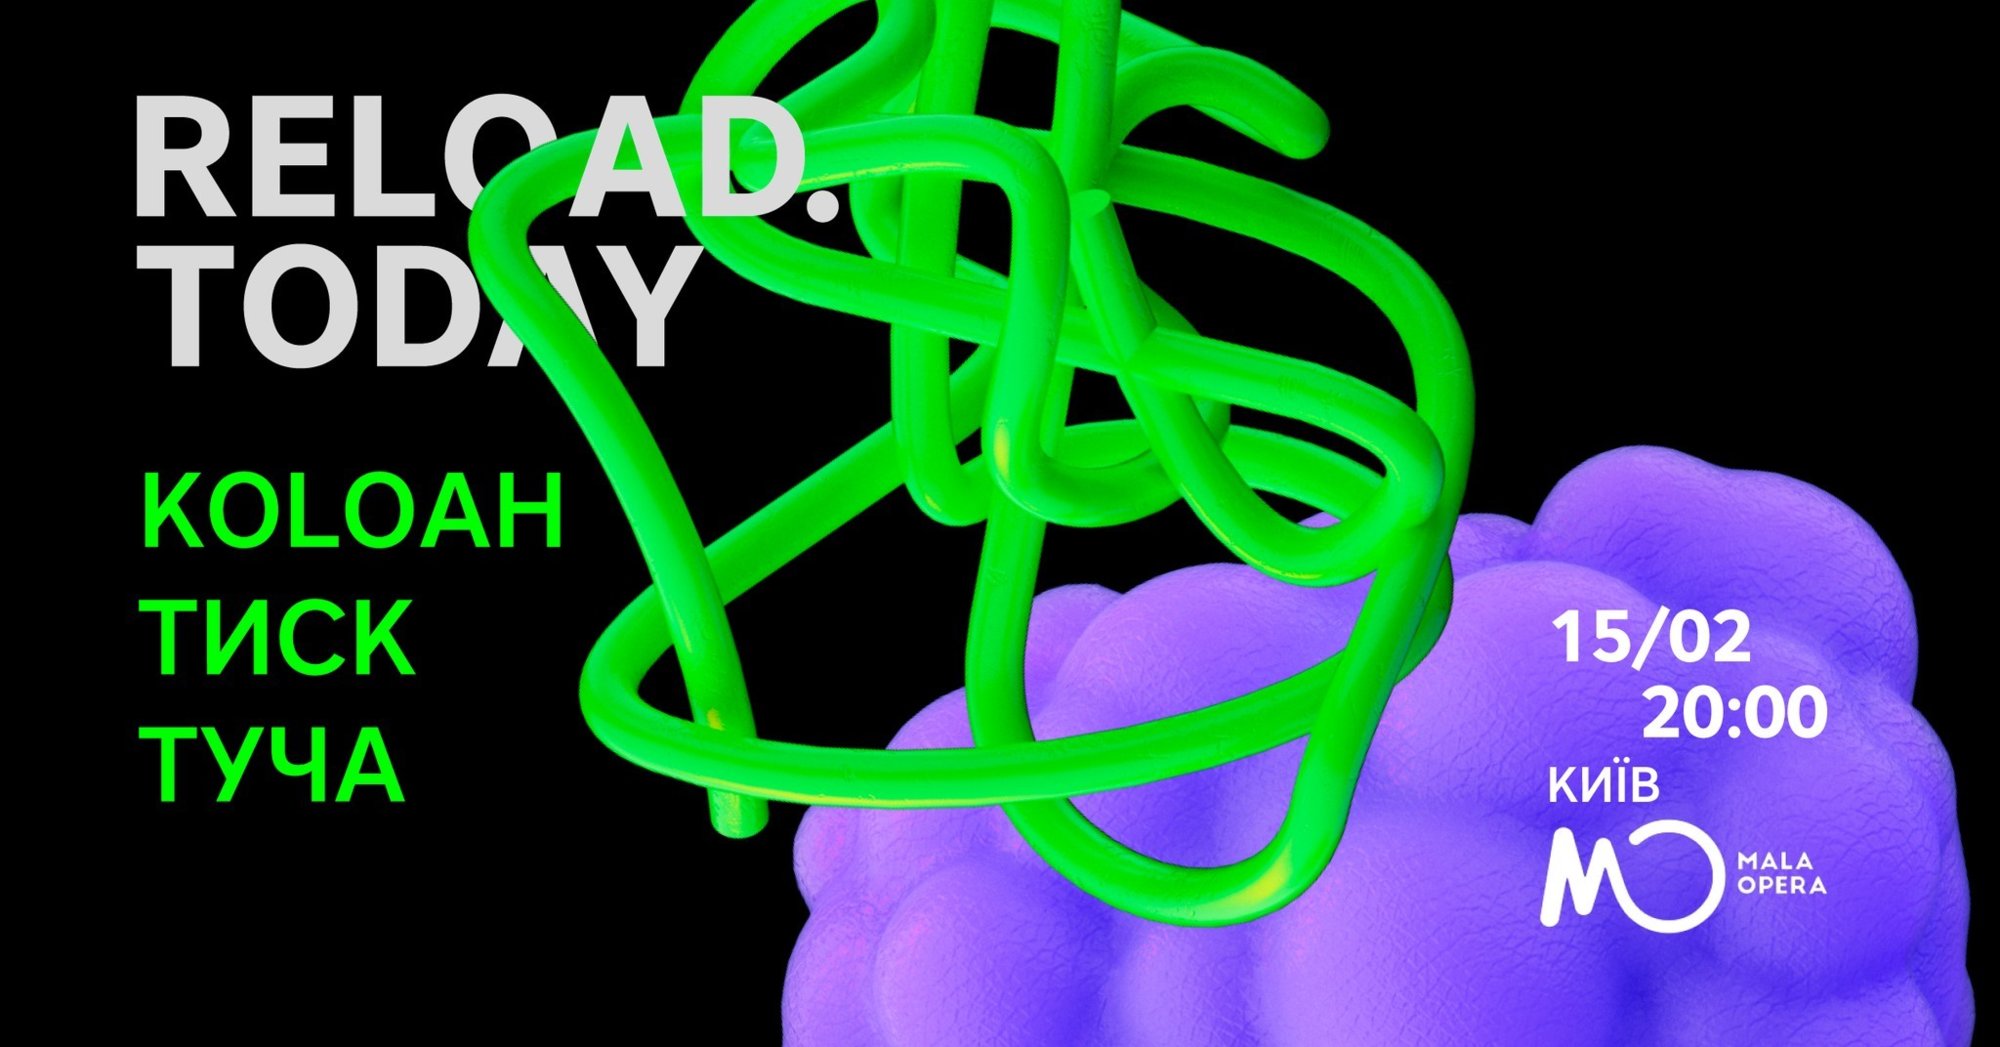 Презентация субкультурного фотобука "Reload Today"